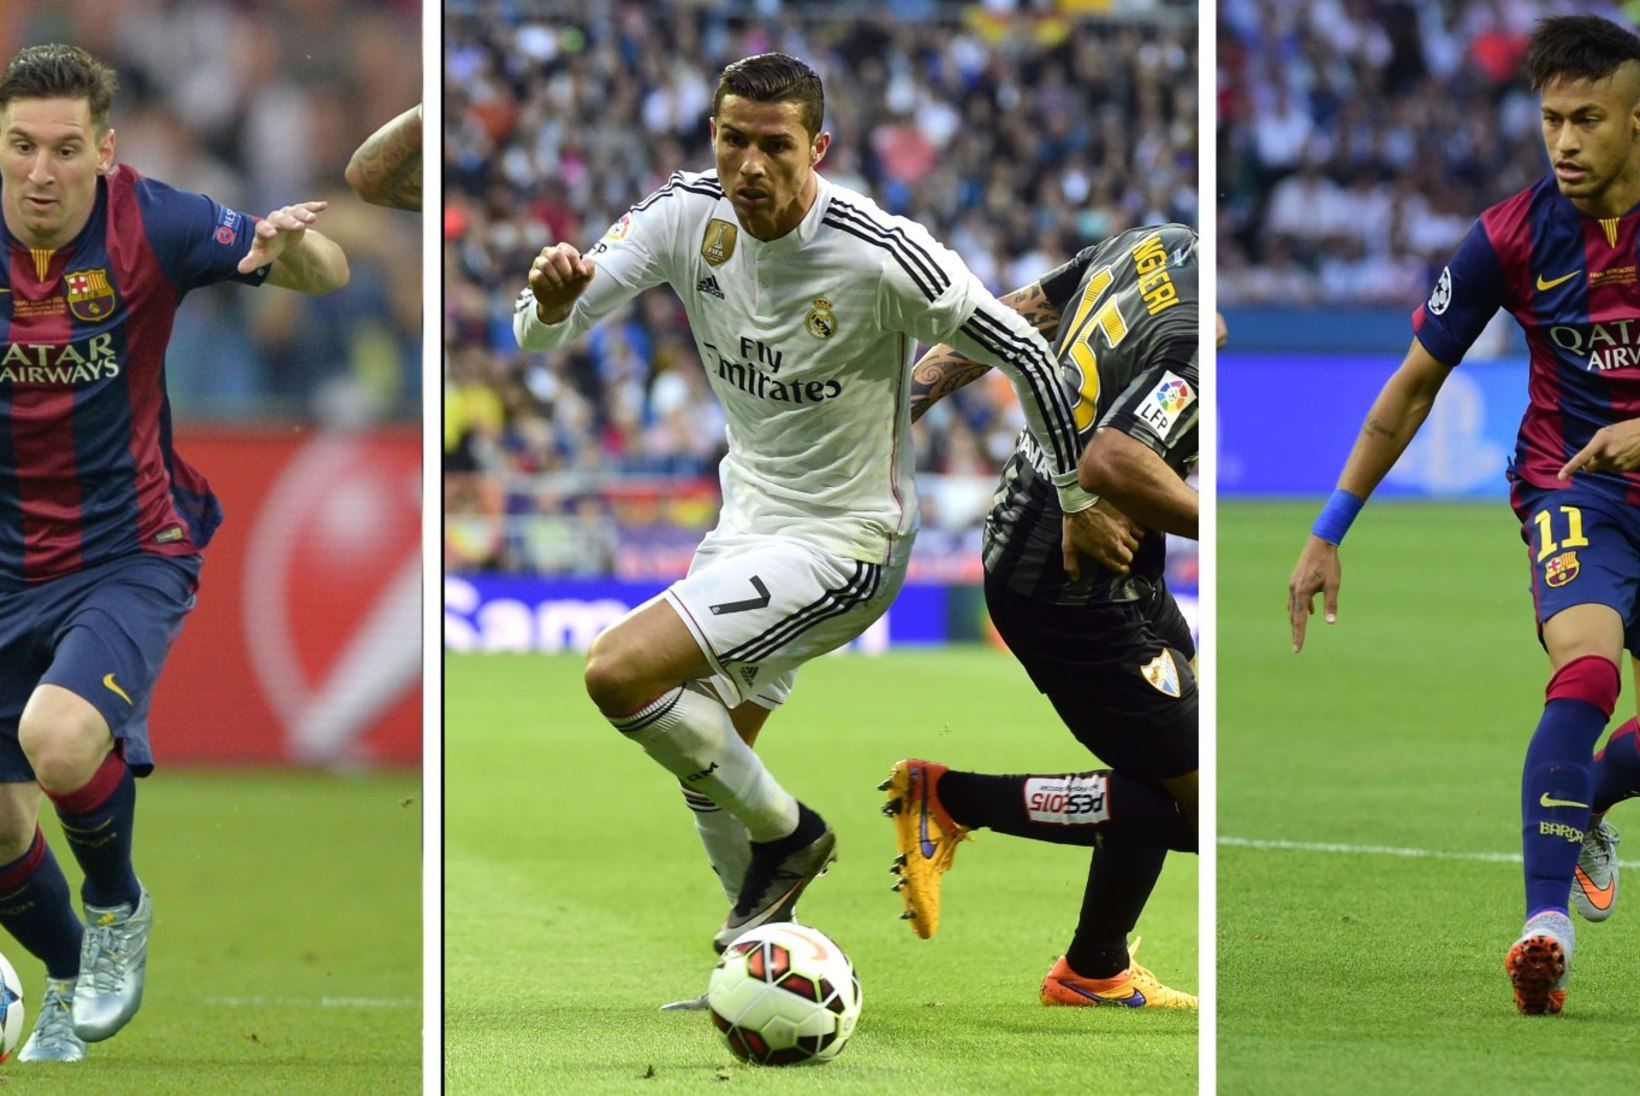 Aasta parim jalgpallur on kas Ronaldo, Messi või Neymar